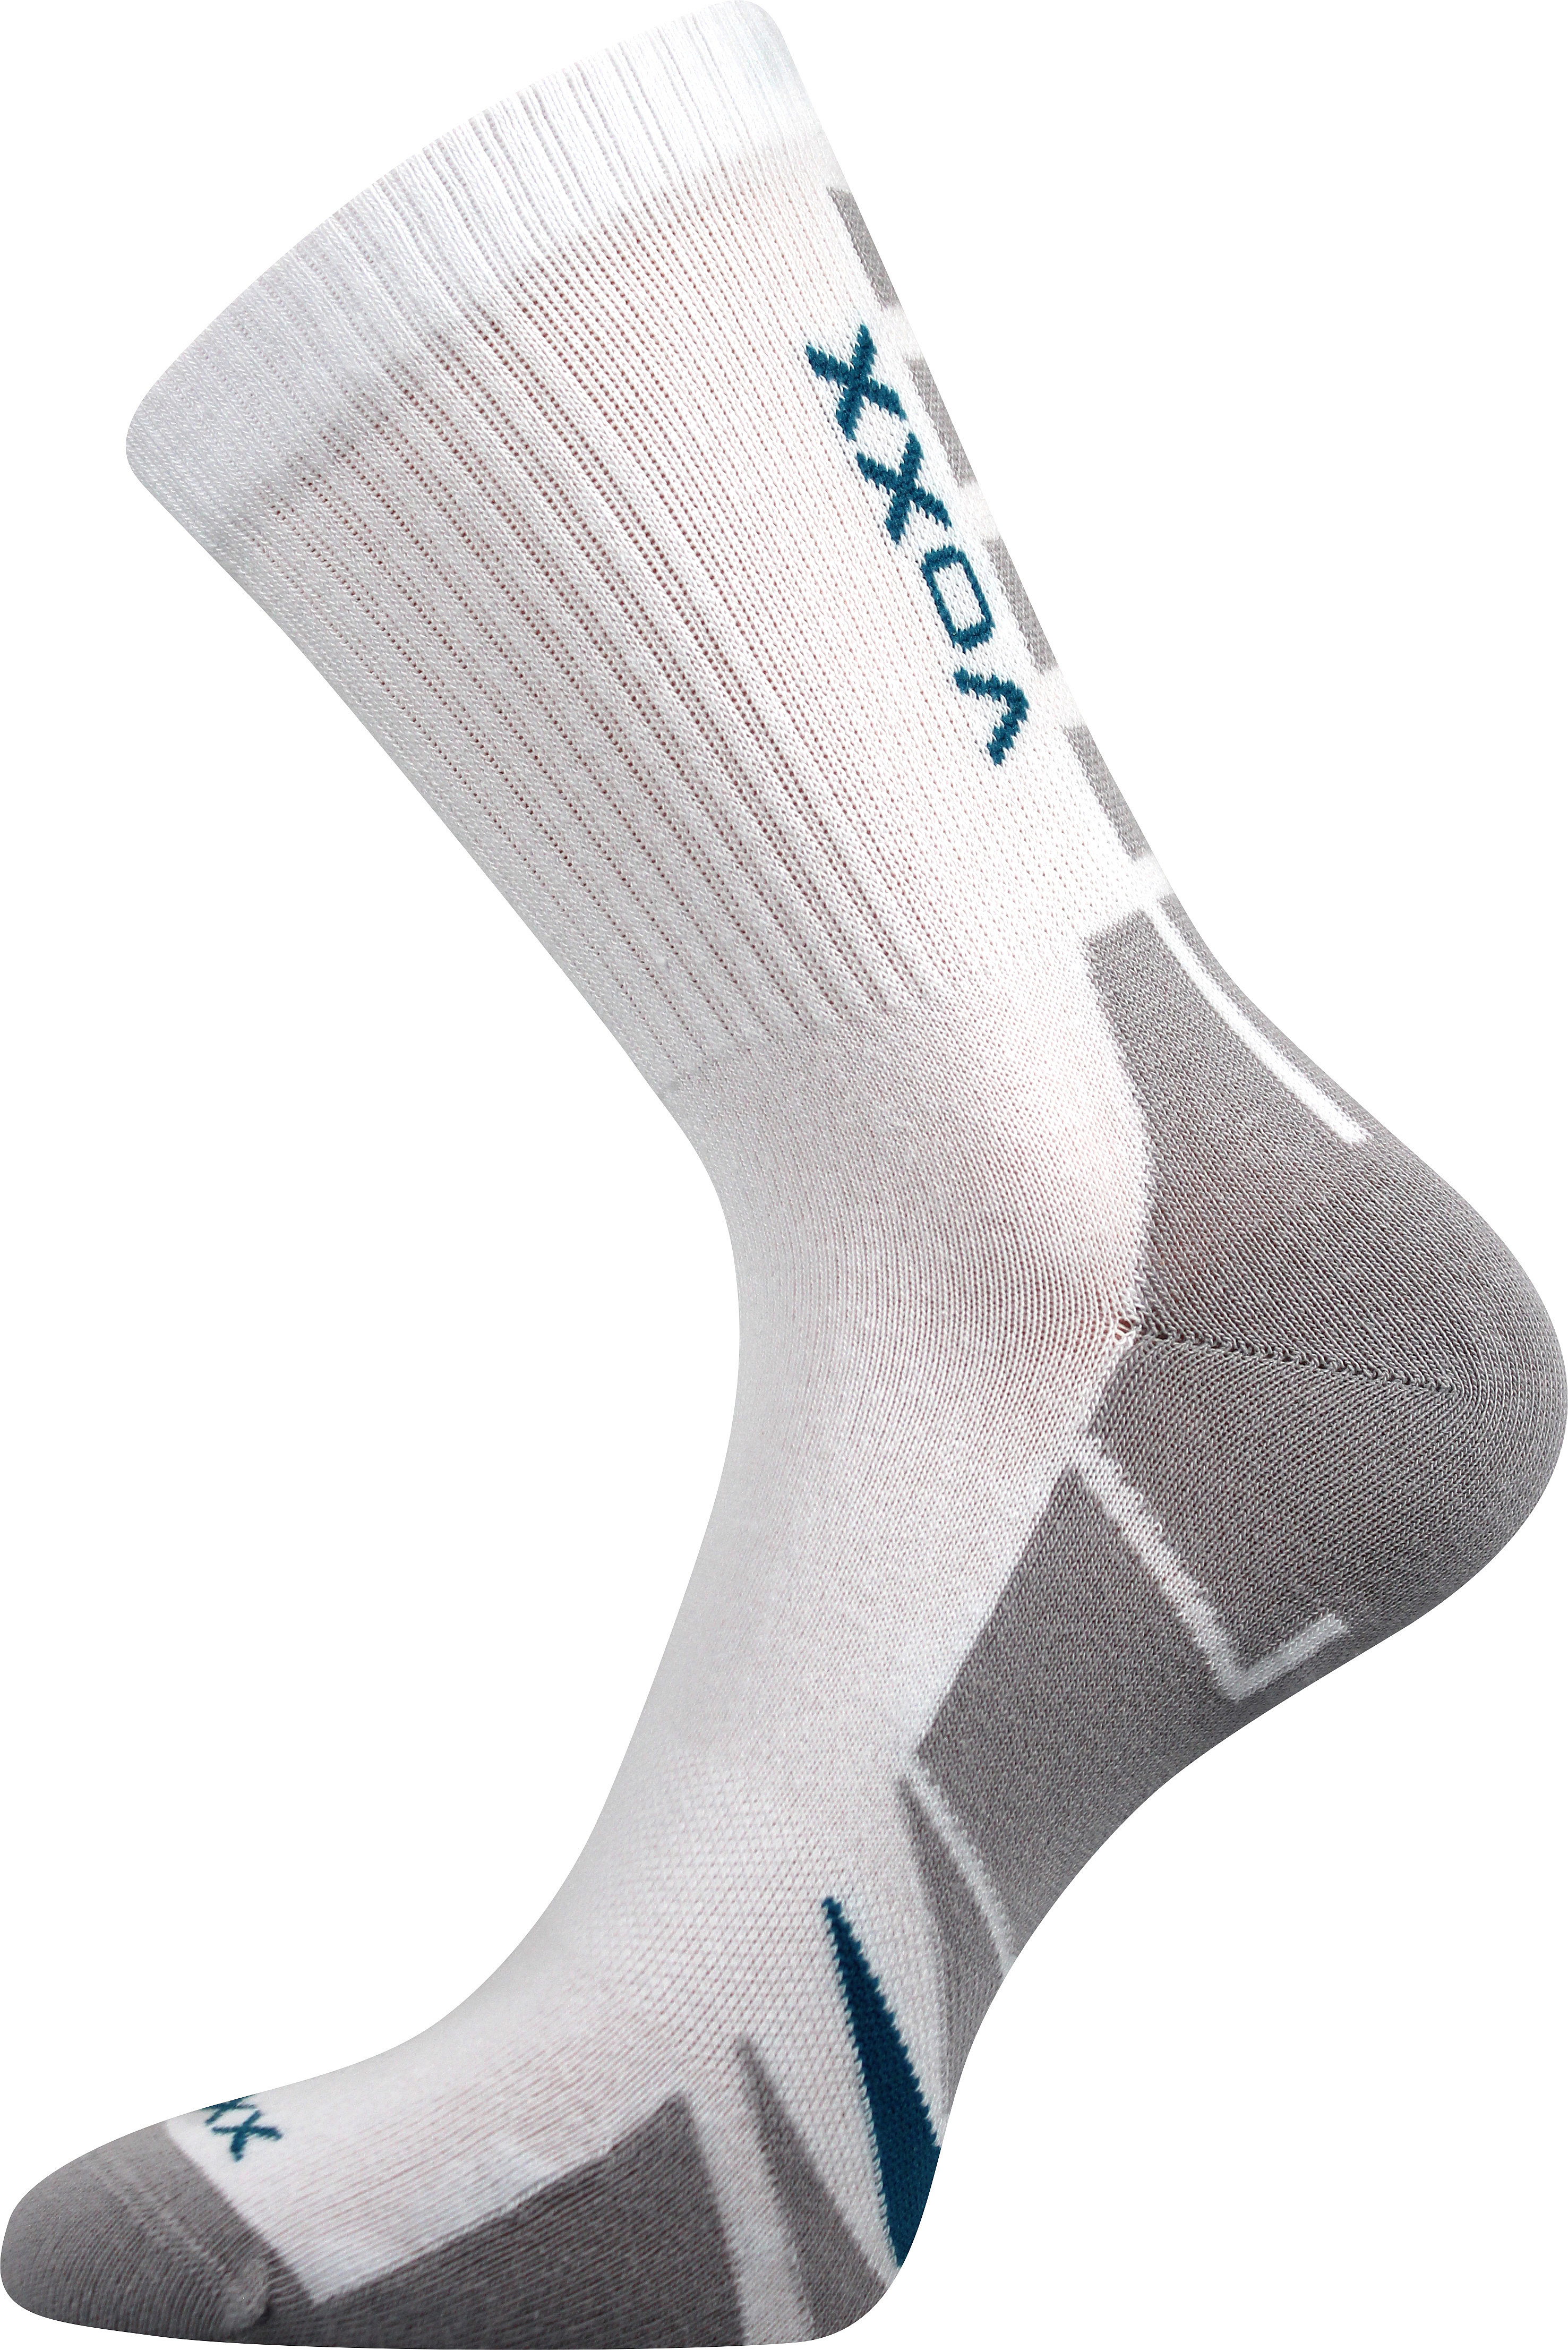 Ponožky sportovní Voxx Hermes - bílé-šedé, 47-50